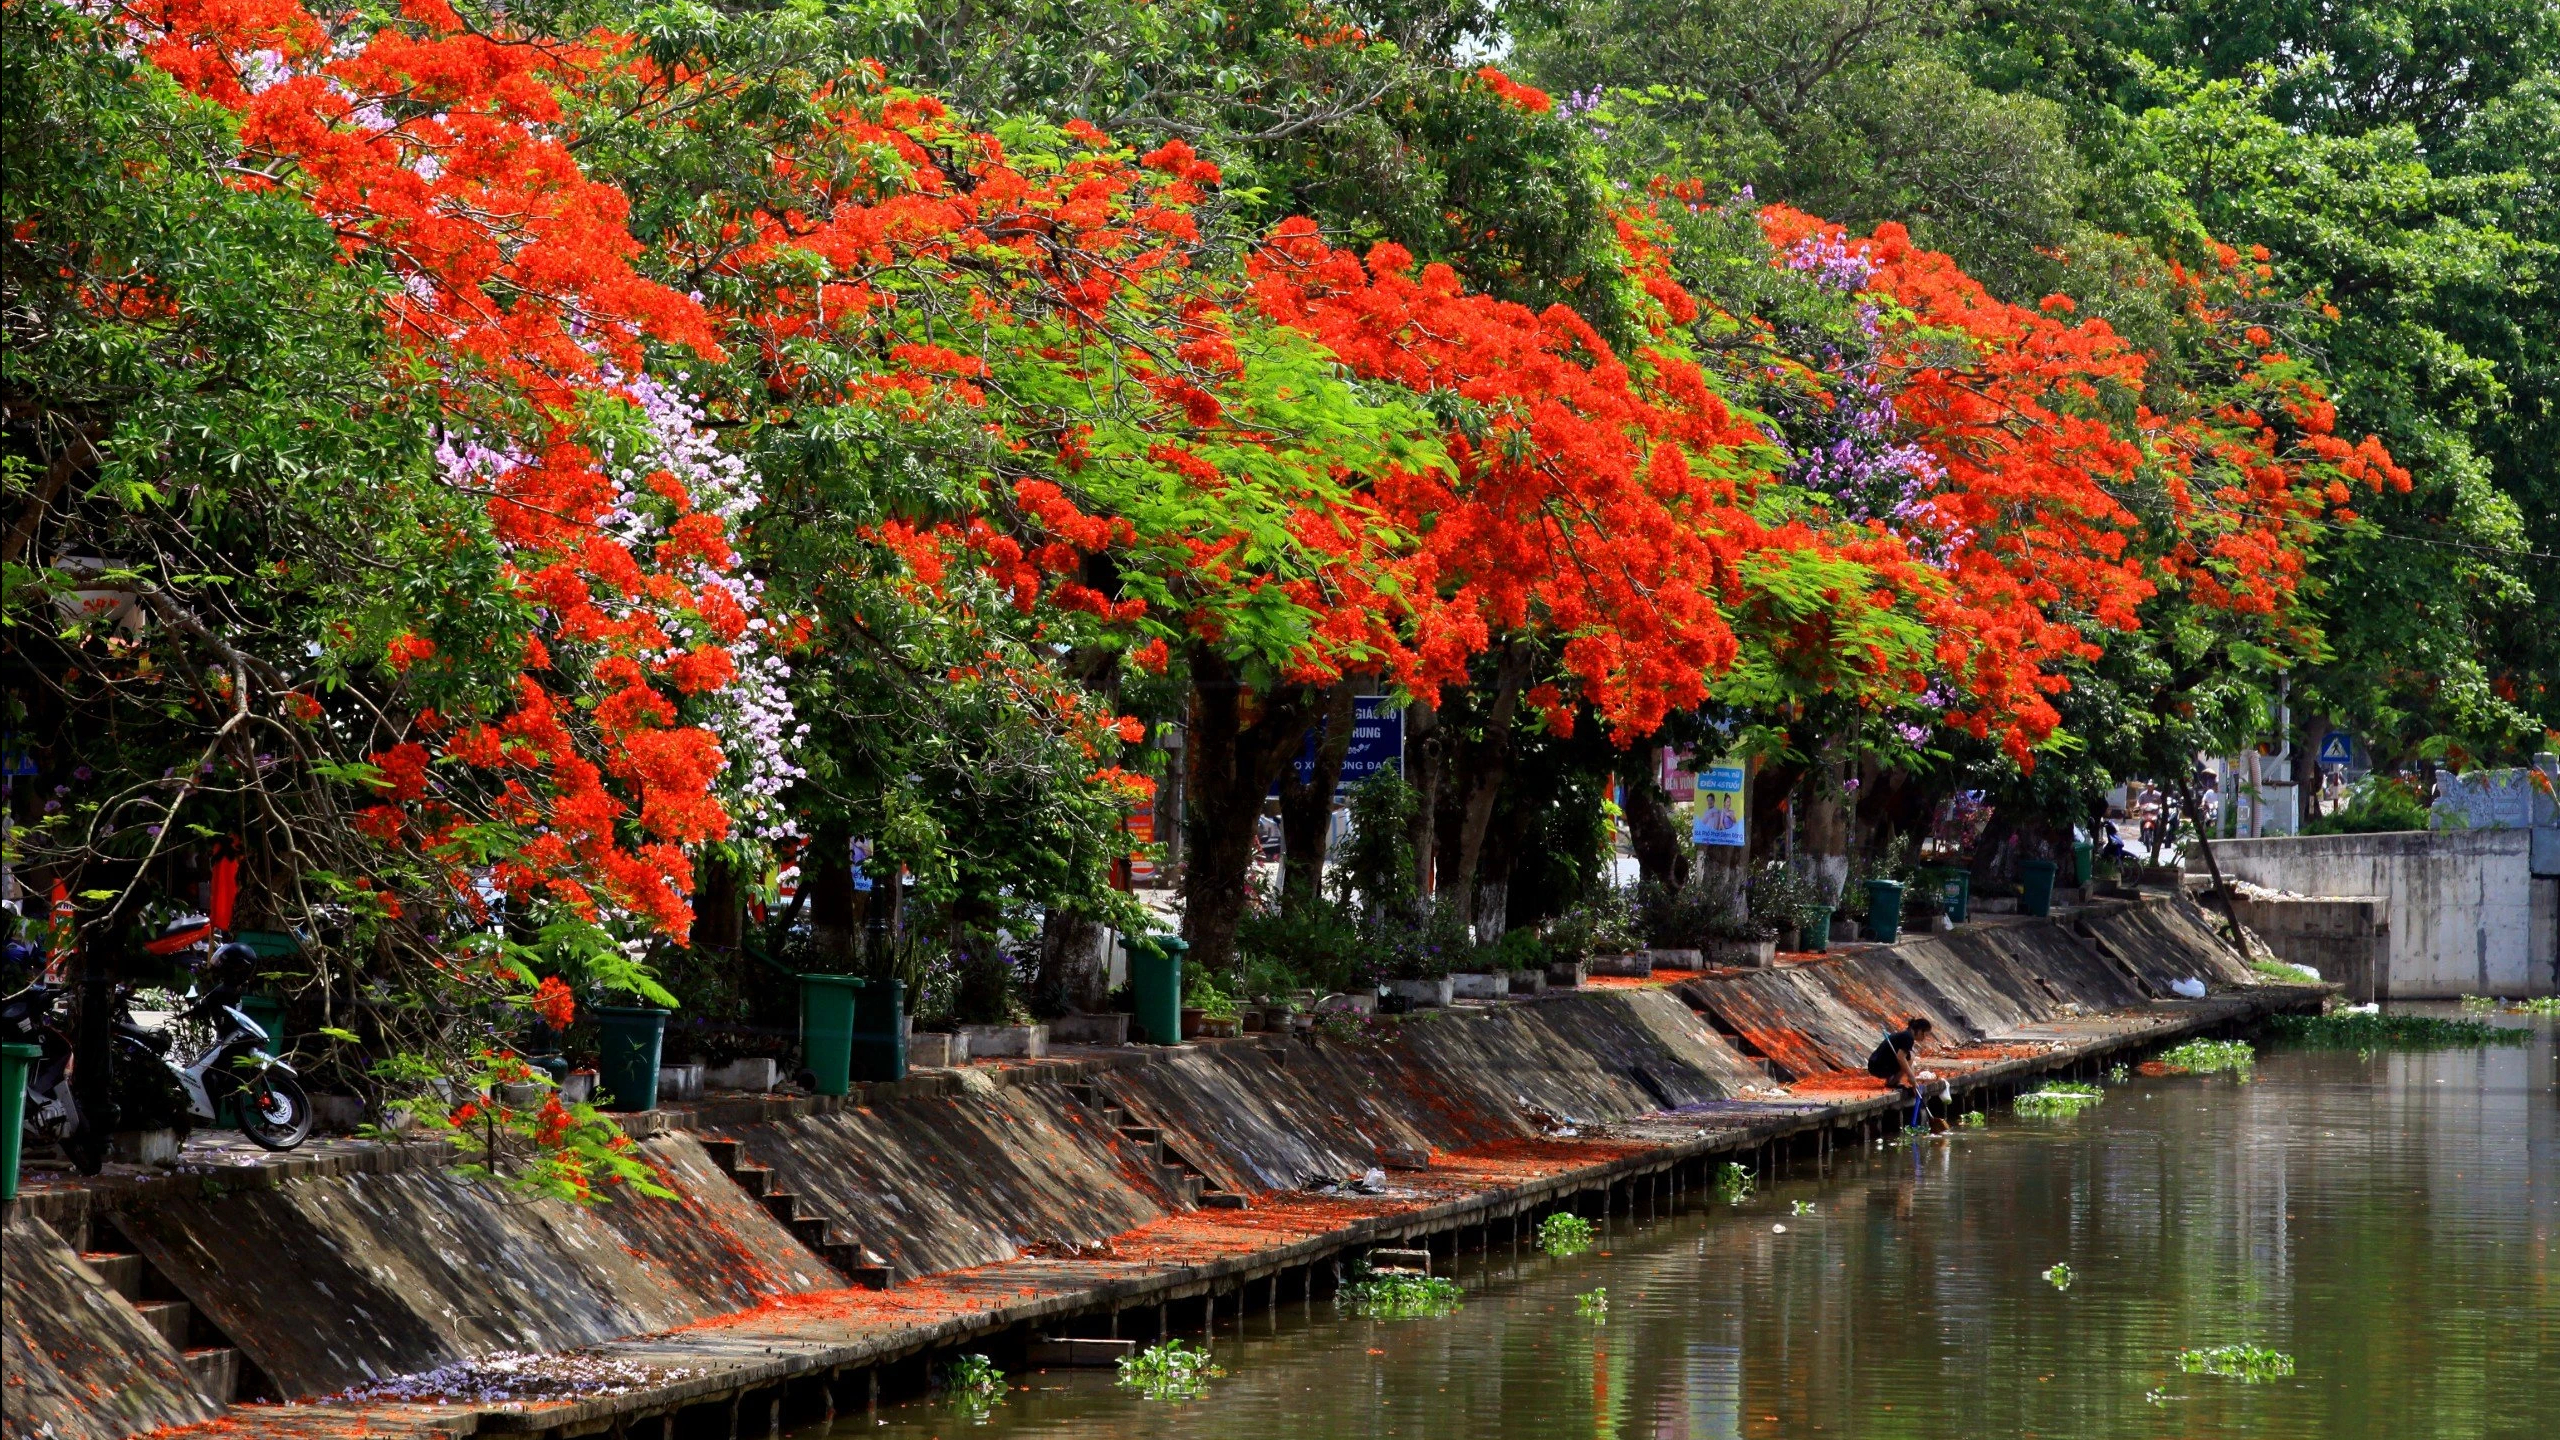 Dọc hai bên bờ sông Ân chảy qua H.Kim Sơn (Ninh Bình) có hàng trăm cây phượng cổ đang nở hoa. Người dân địa phương cho biết năm nay thời tiết phù hợp nên mật độ hoa nở nhiều hơn những năm trước đó